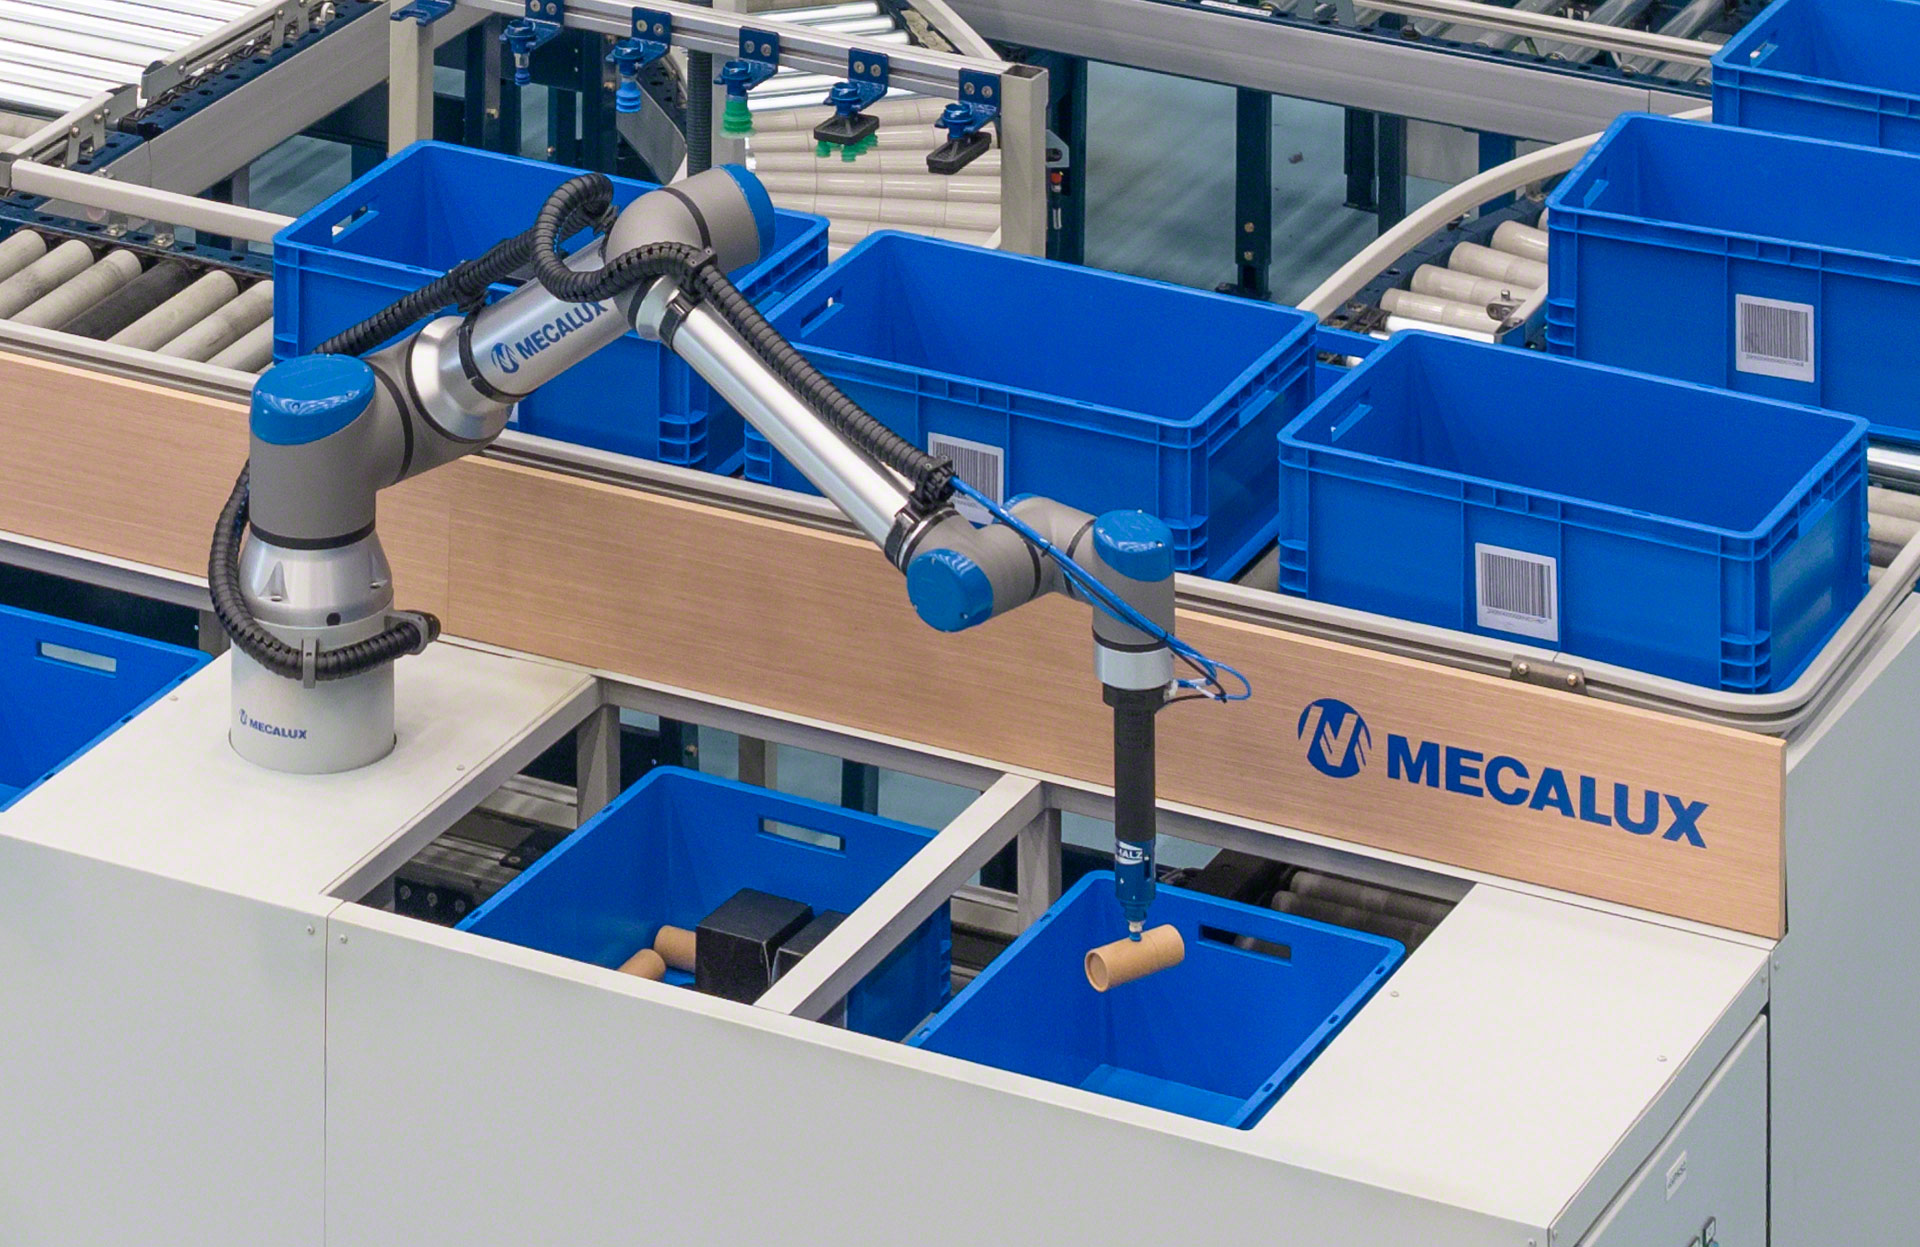 Der Kommissionierroboter von Mecalux ermöglicht die vollständige Automatisierung der Kommissionierung